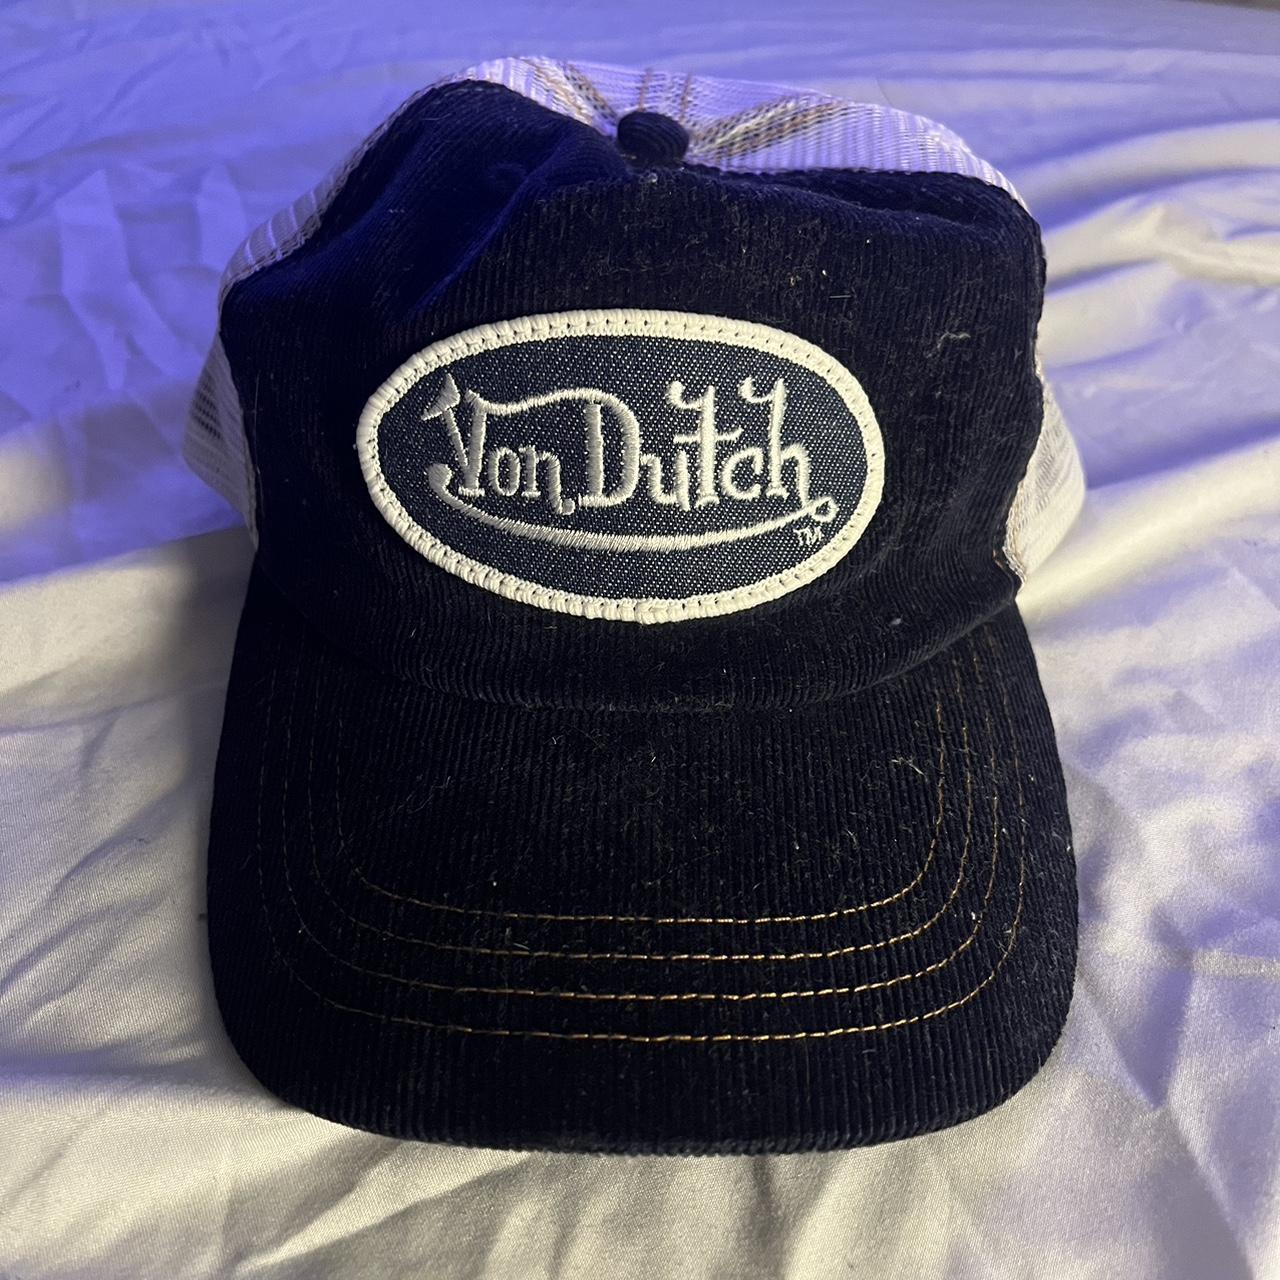 Von Dutch Velvet Trucker Hat